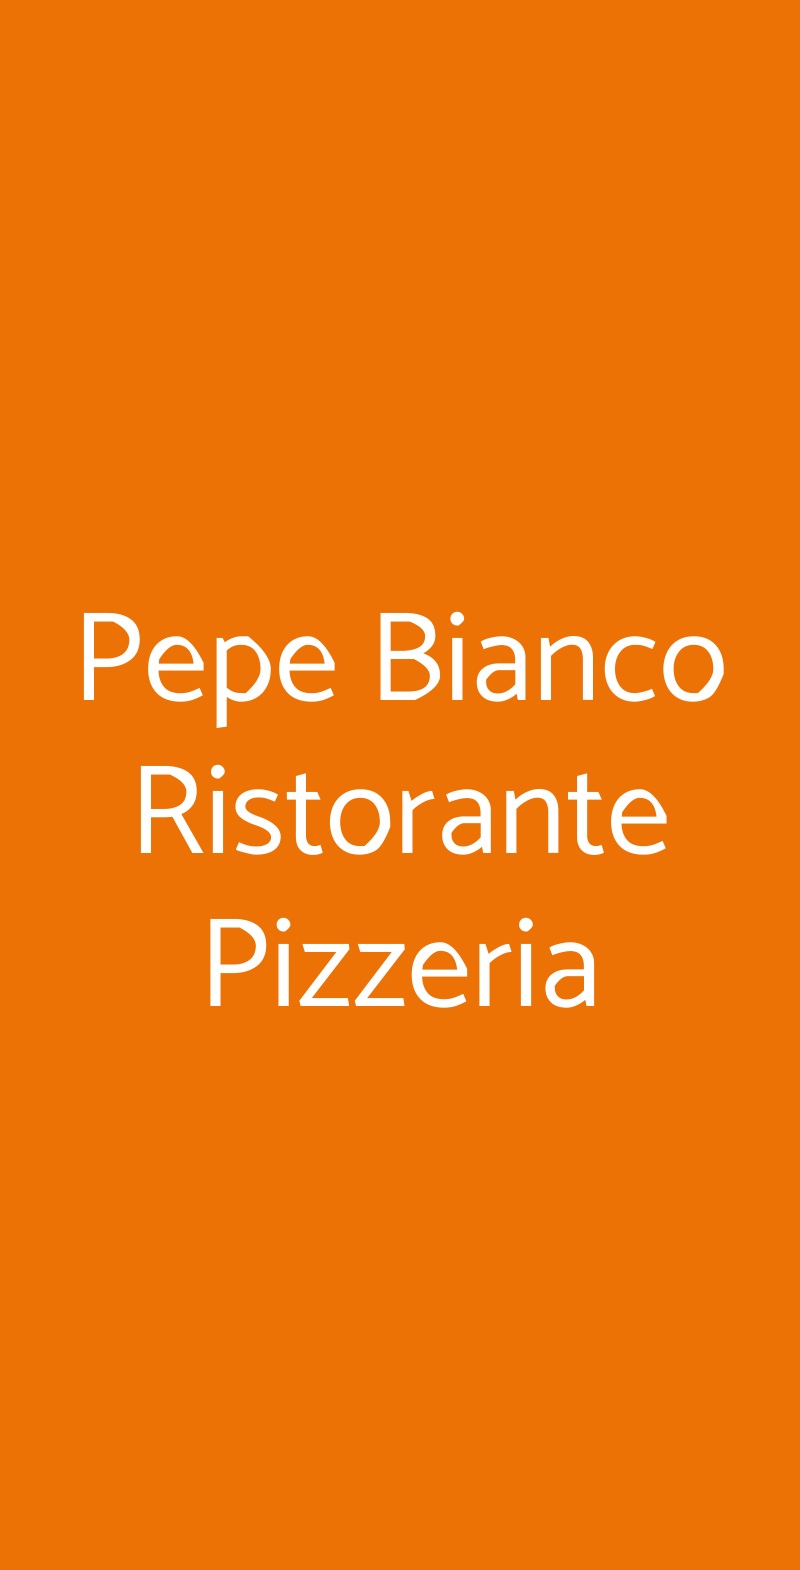 Pepe Bianco Ristorante Pizzeria Reggio Emilia menù 1 pagina